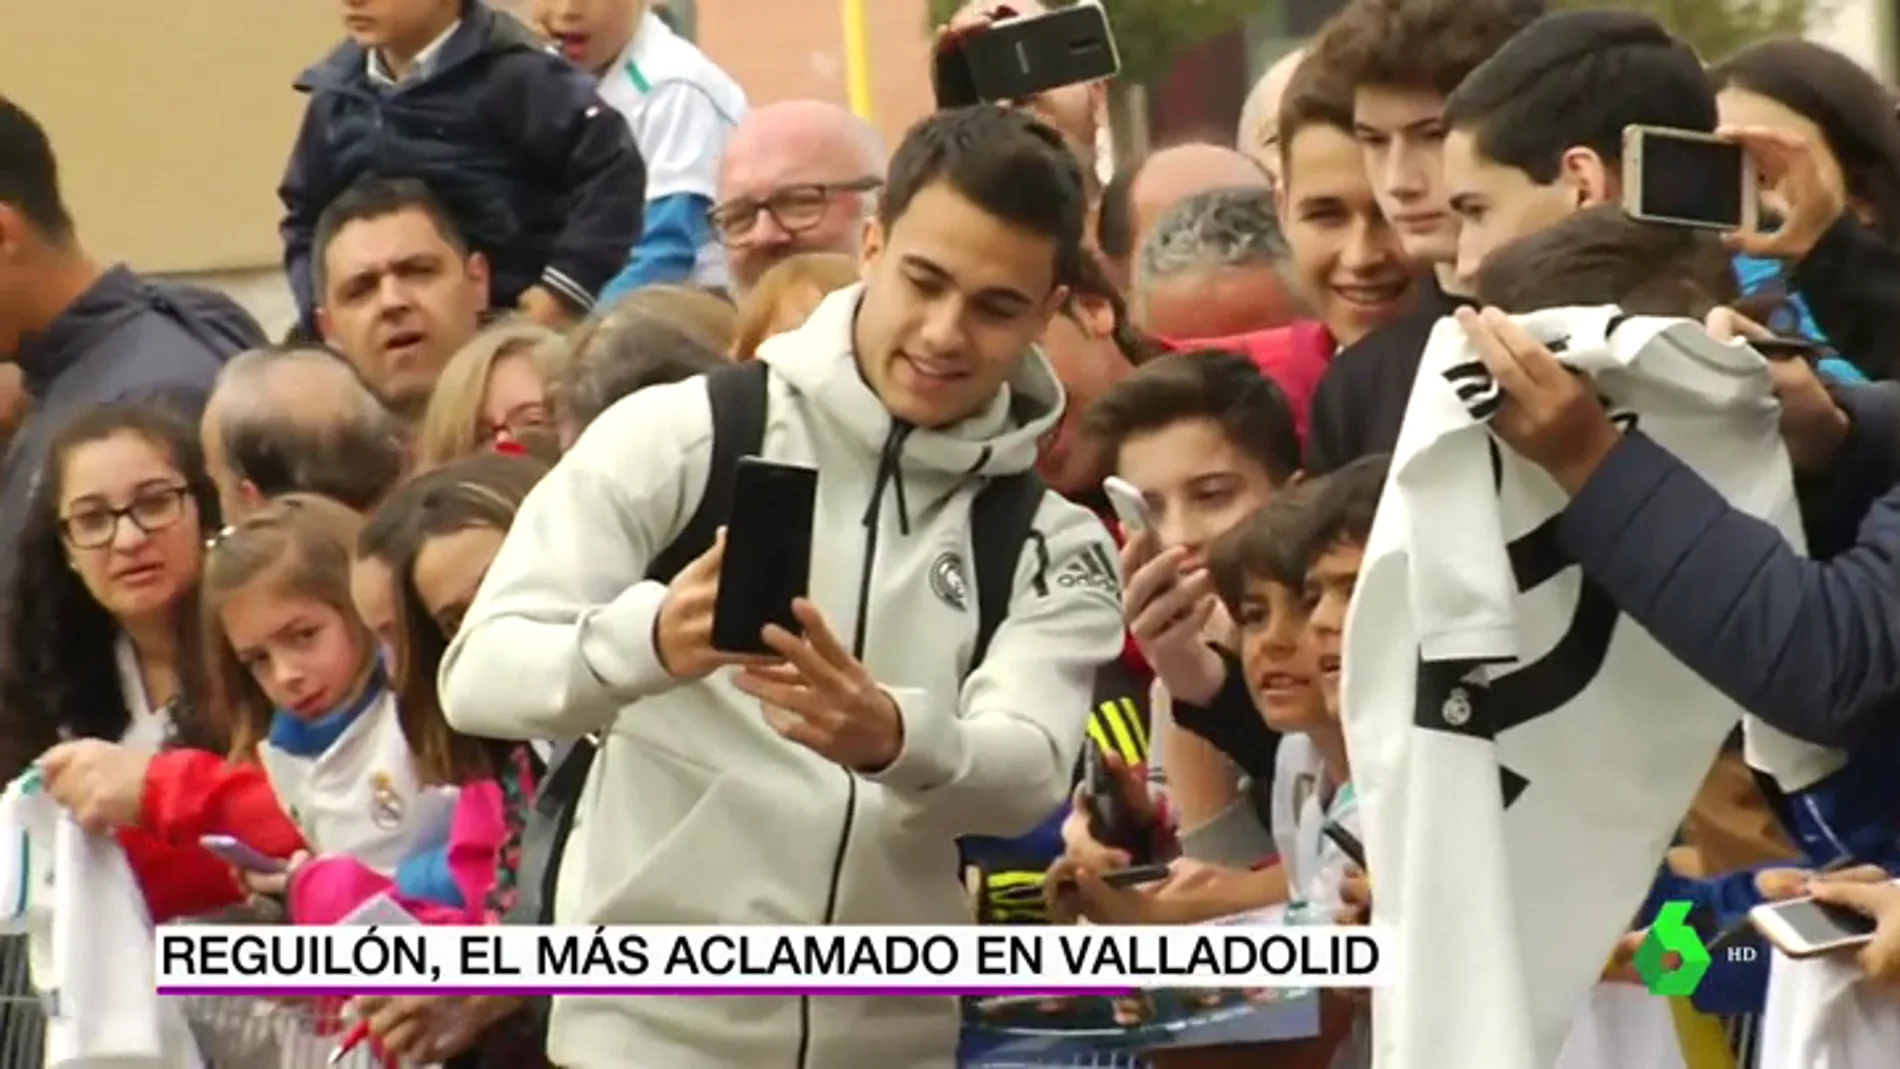 Reguilón, el más aclamado en la llegada del Real Madrid a Valladolid: "¡Eres un crack!"